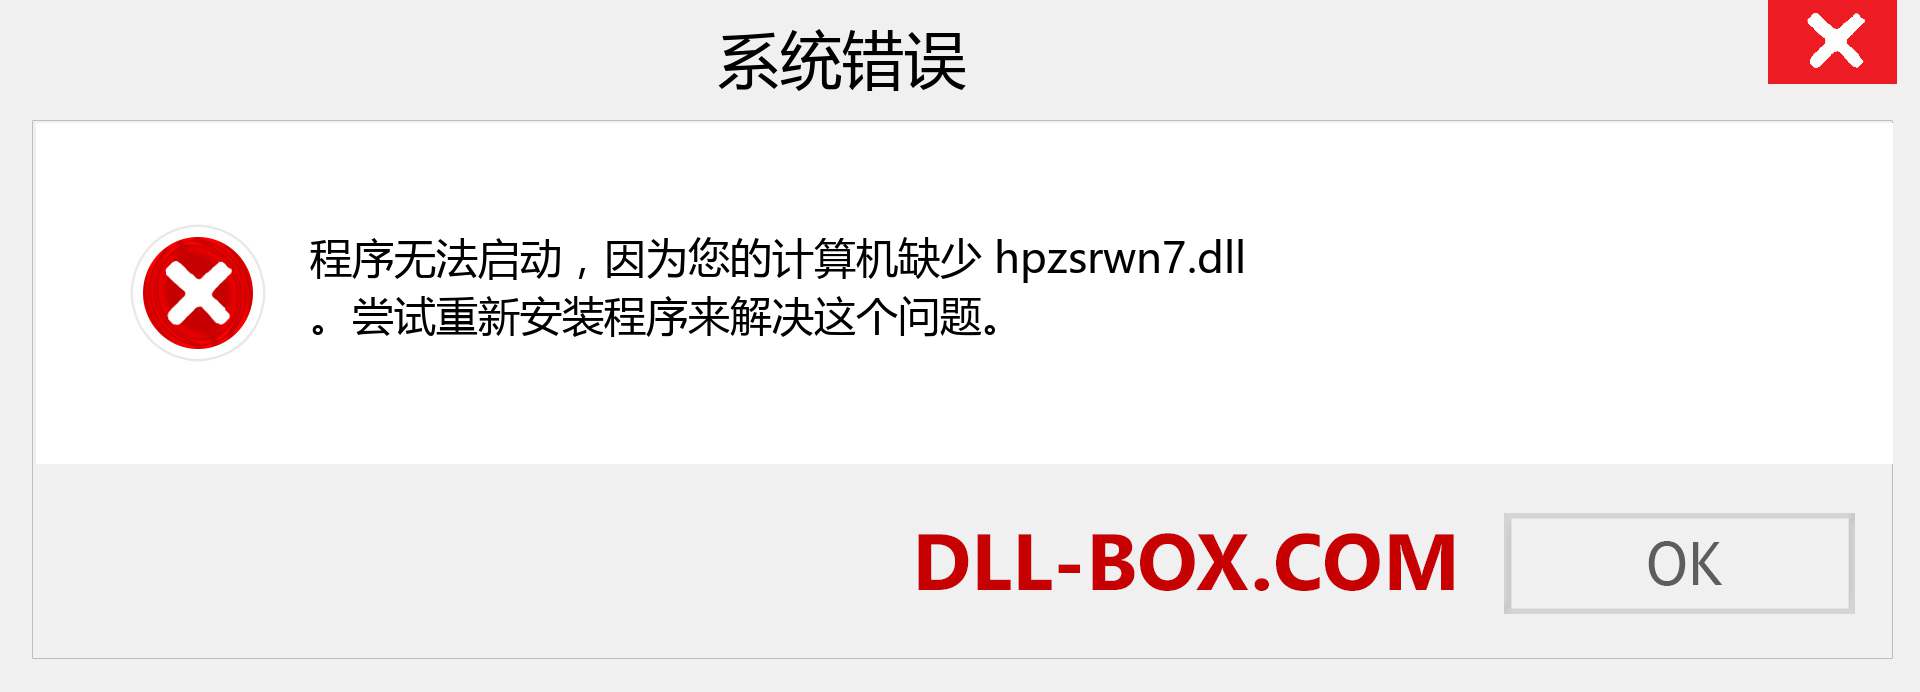 hpzsrwn7.dll 文件丢失？。 适用于 Windows 7、8、10 的下载 - 修复 Windows、照片、图像上的 hpzsrwn7 dll 丢失错误